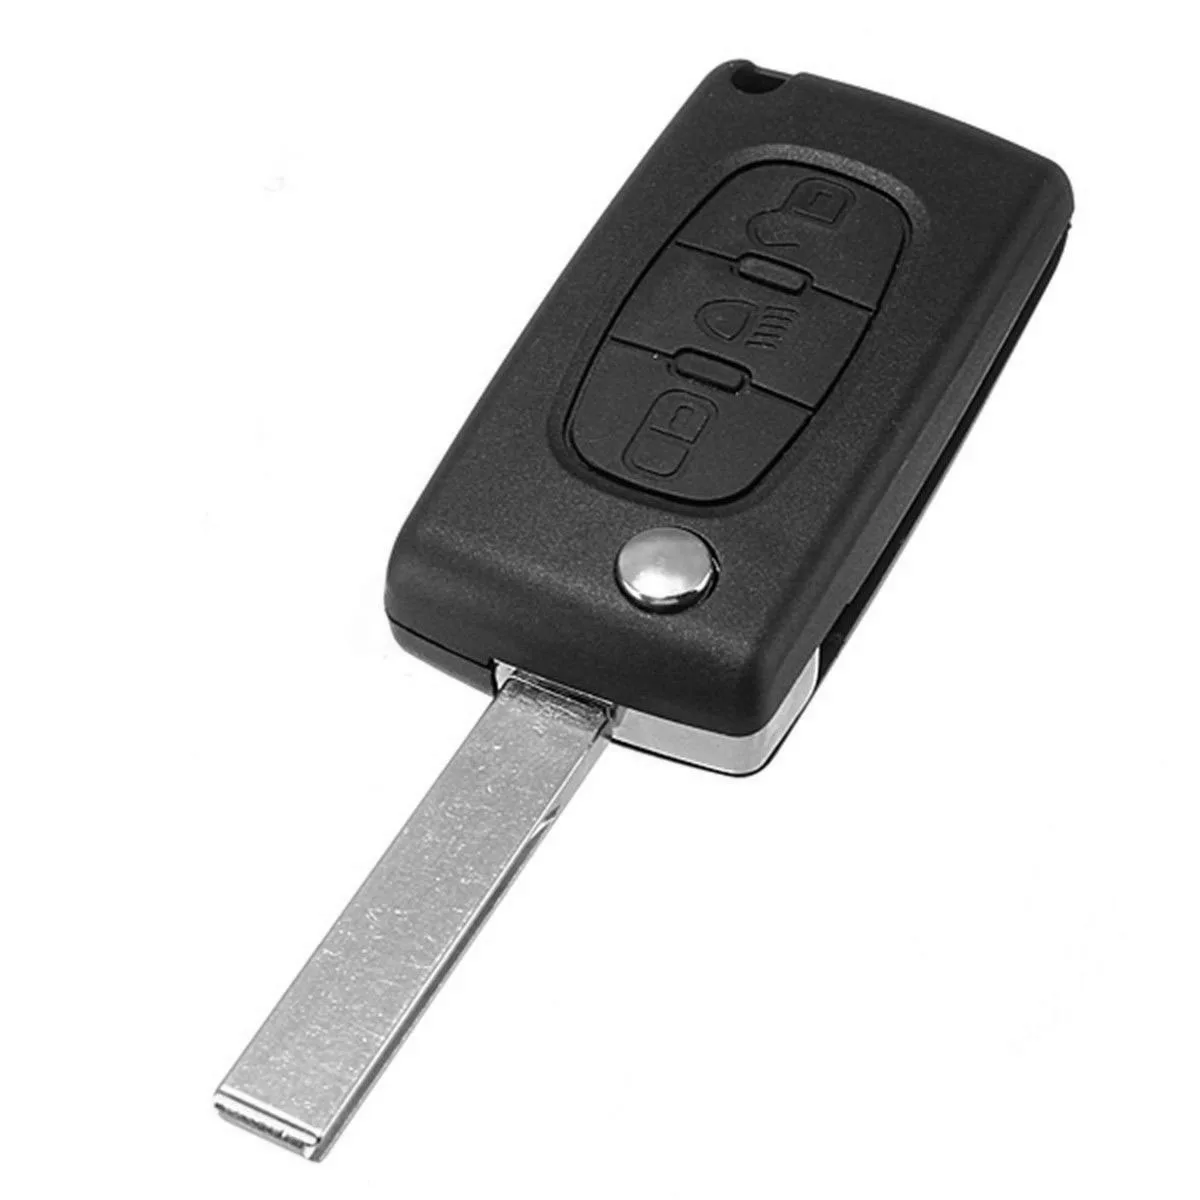 Для Citroen C2 C3 C4 C5 C6 Picasso 3 кнопки дистанционный смарт ключ-Брелок чехол складной Флип Автомобильный ключ оболочка нерезанное лезвие автомобильные аксессуары